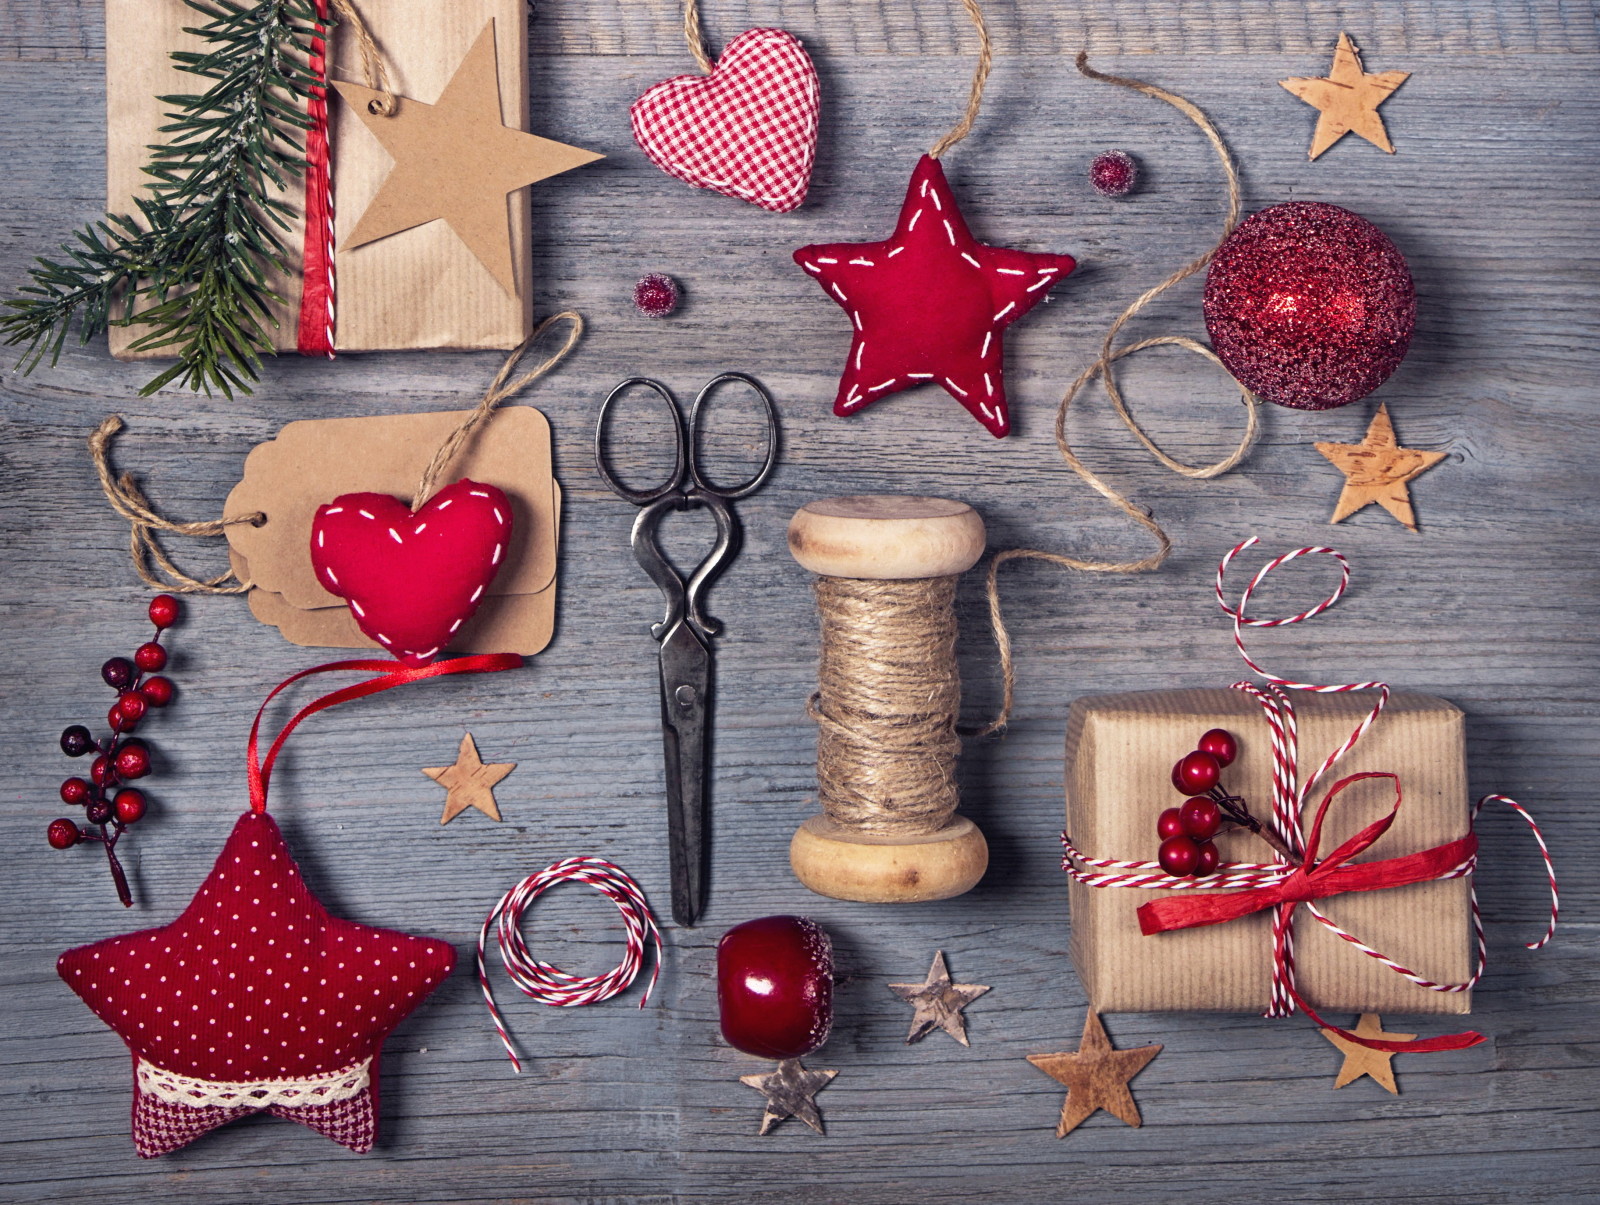 Năm mới, Giáng sinh, gỗ, trang trí, Chúc mừng, những món quà, Giáng sinh, cổ điển